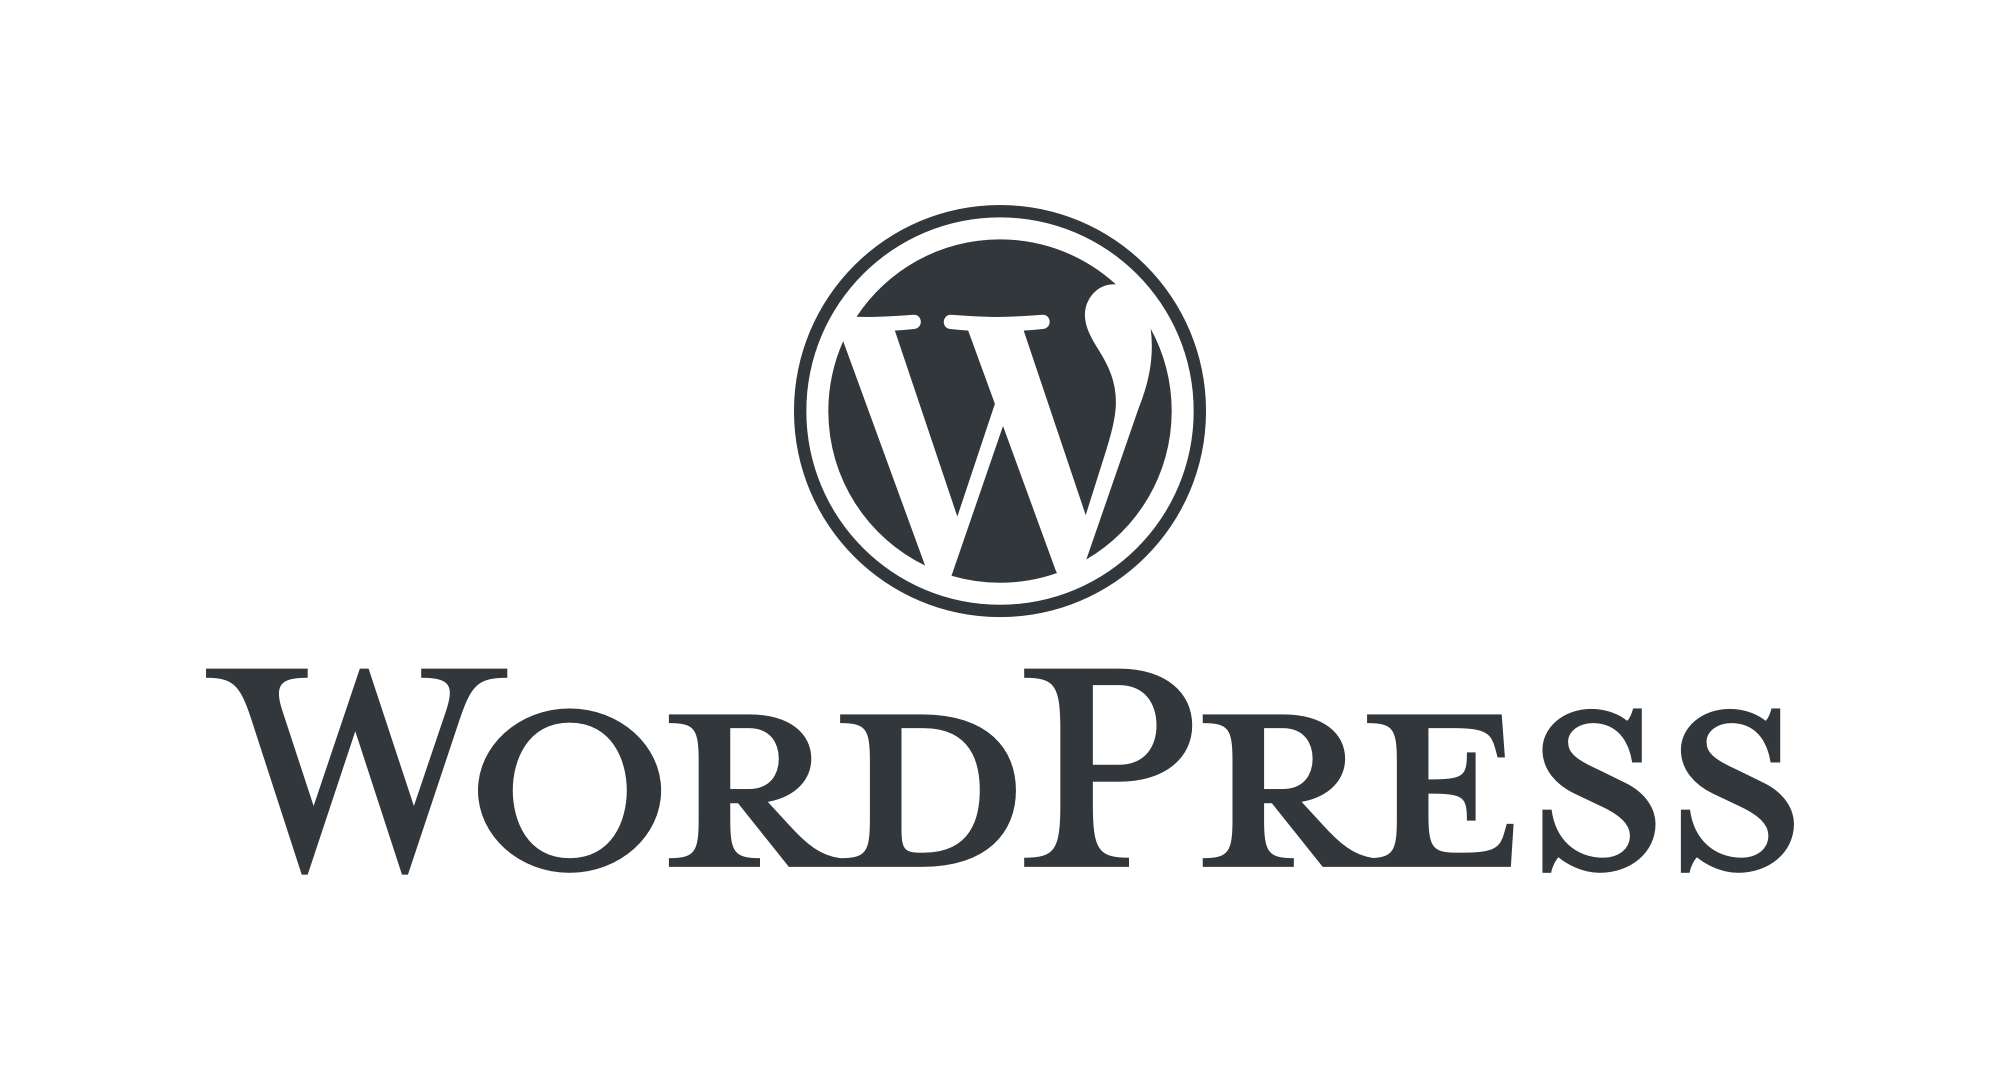 اكتشف المزايا التي تم تطبيقها في الإصدار 6.5 من WordPress، وهو أحدث تحديث لنظام إدارة المحتوى.